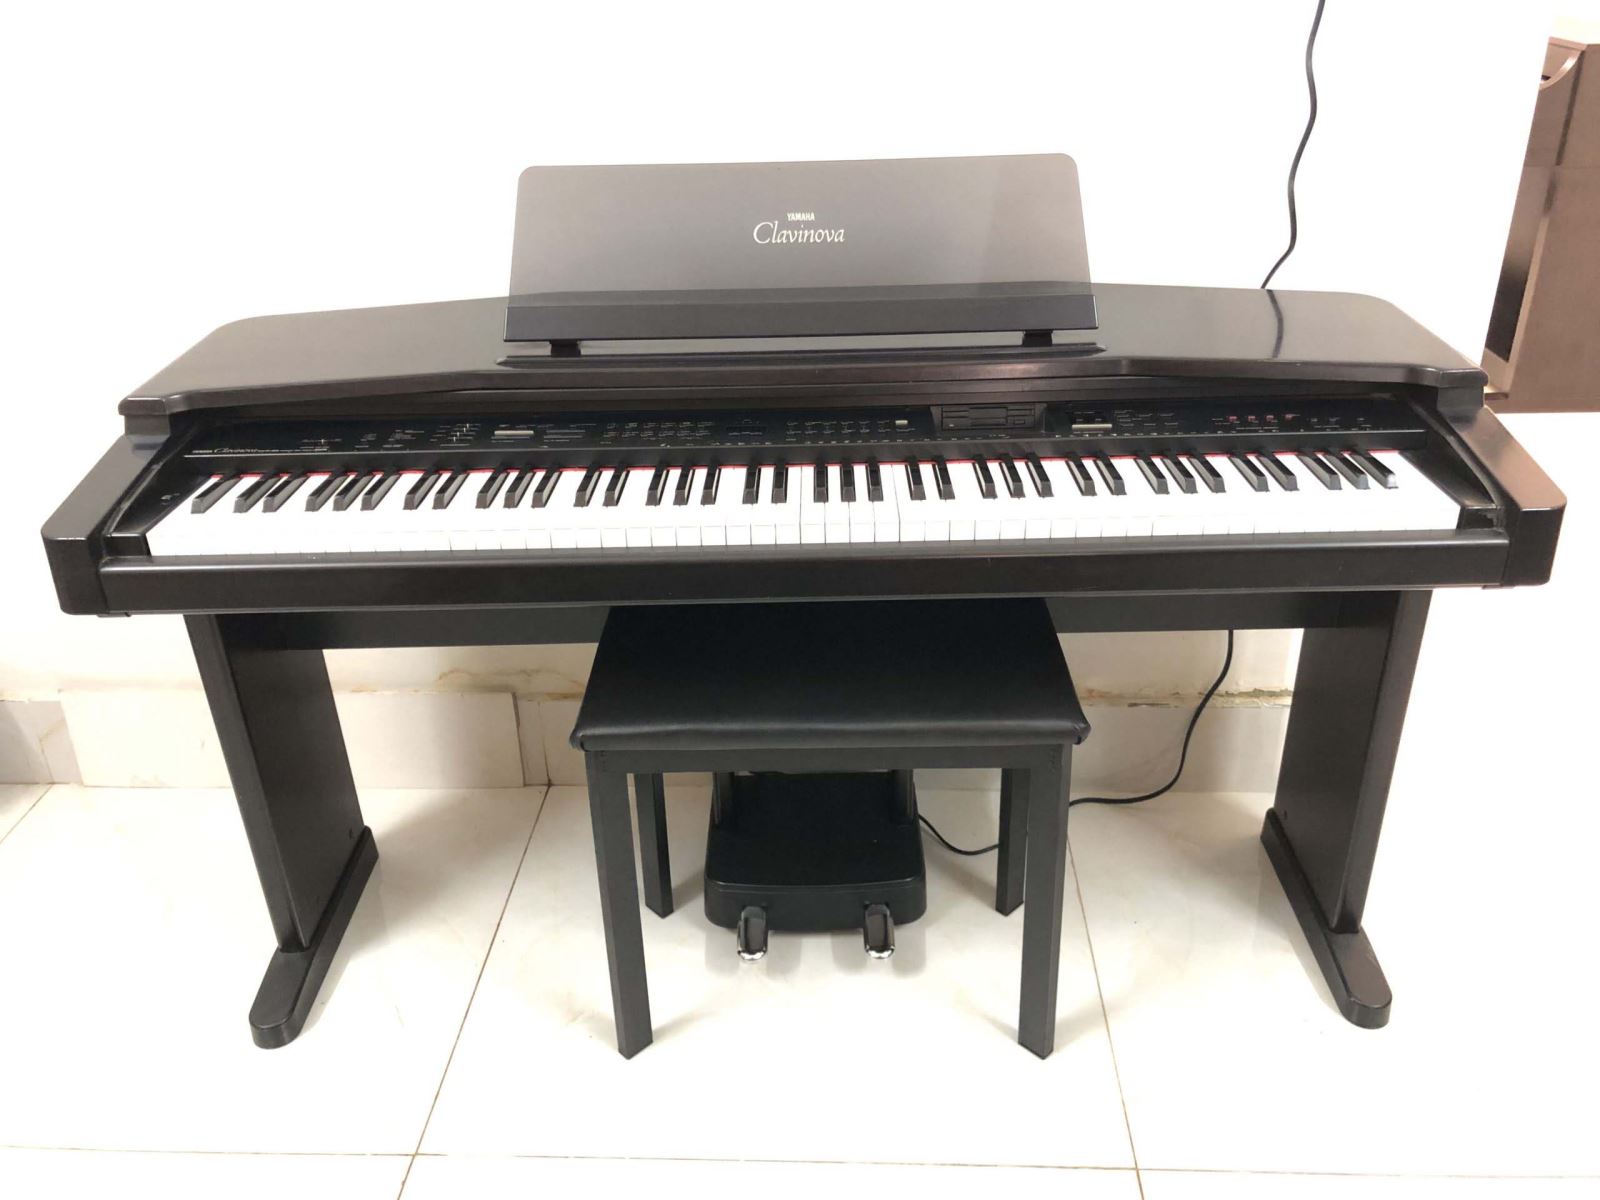 đàn piano điện yamaha cvp55 giá rẻ